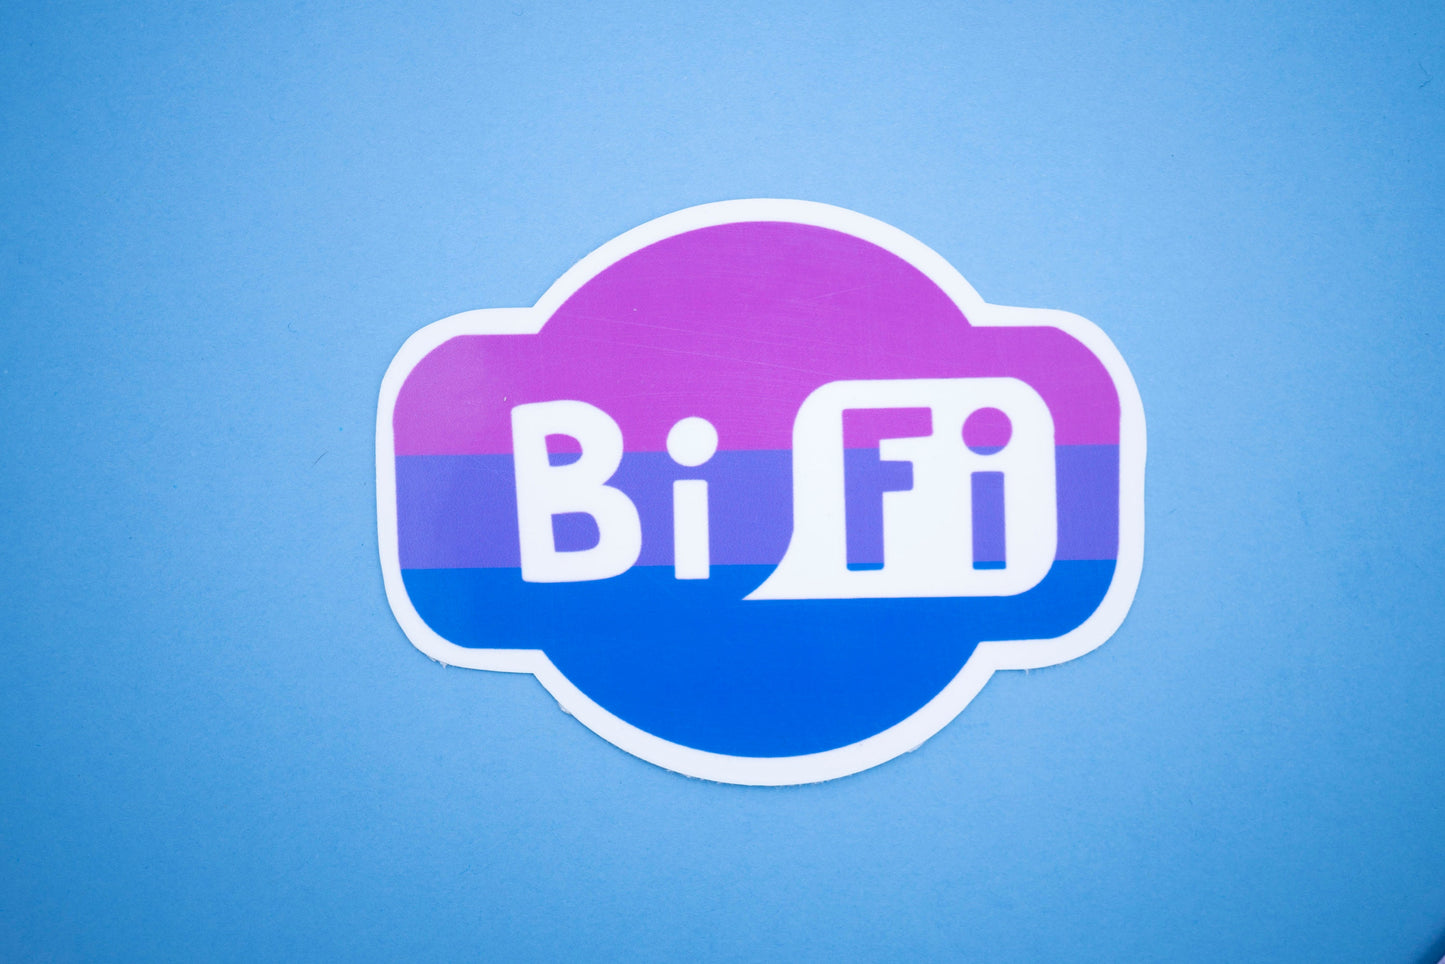 Bisexual Pride Sticker/ BiFi Weatherproof Die-Cut Sticker/ BiFi Die-Cut Sticker/ Bisexual Pride Flag Sticker/ BiFi Sticker